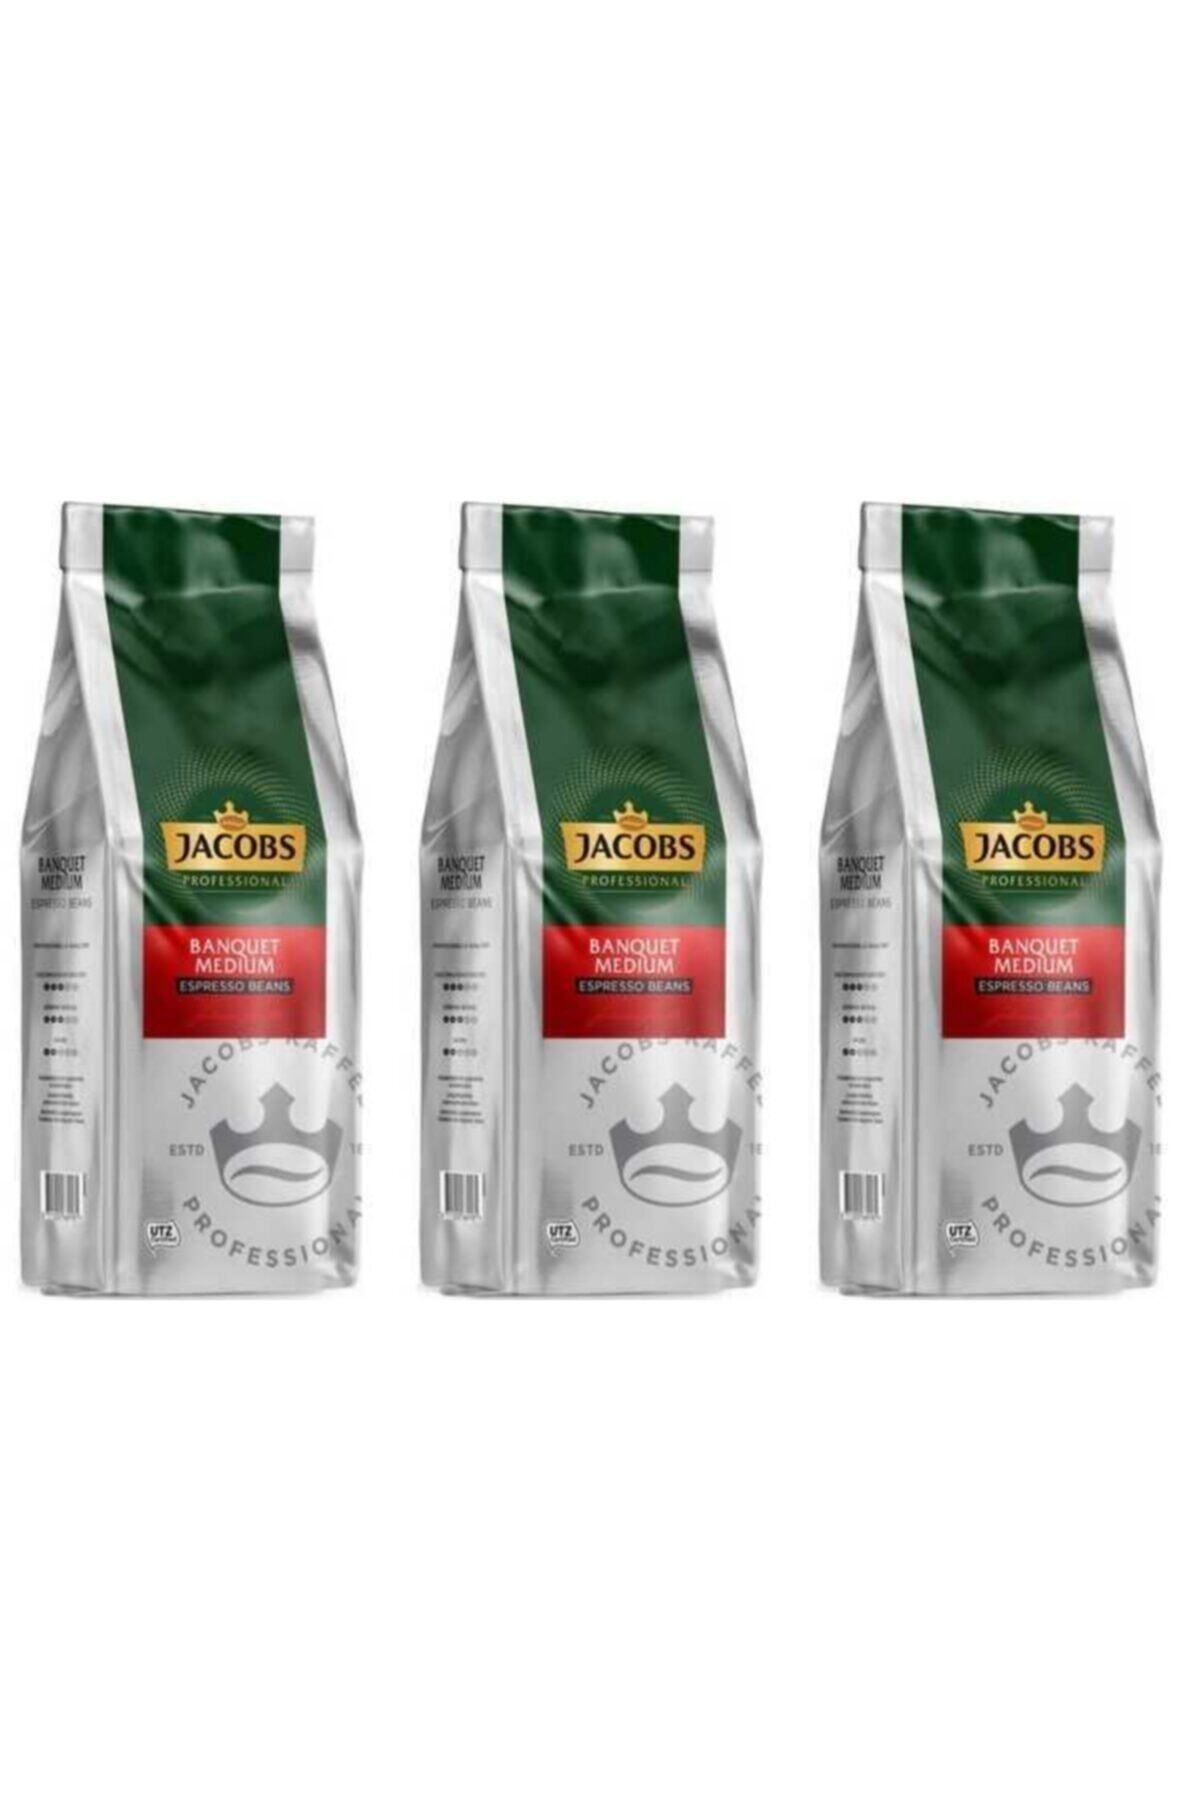 Jacobs Banquet Medium Espresso Beans Çekirdek Kahve 1000 Gr X 3 Paket